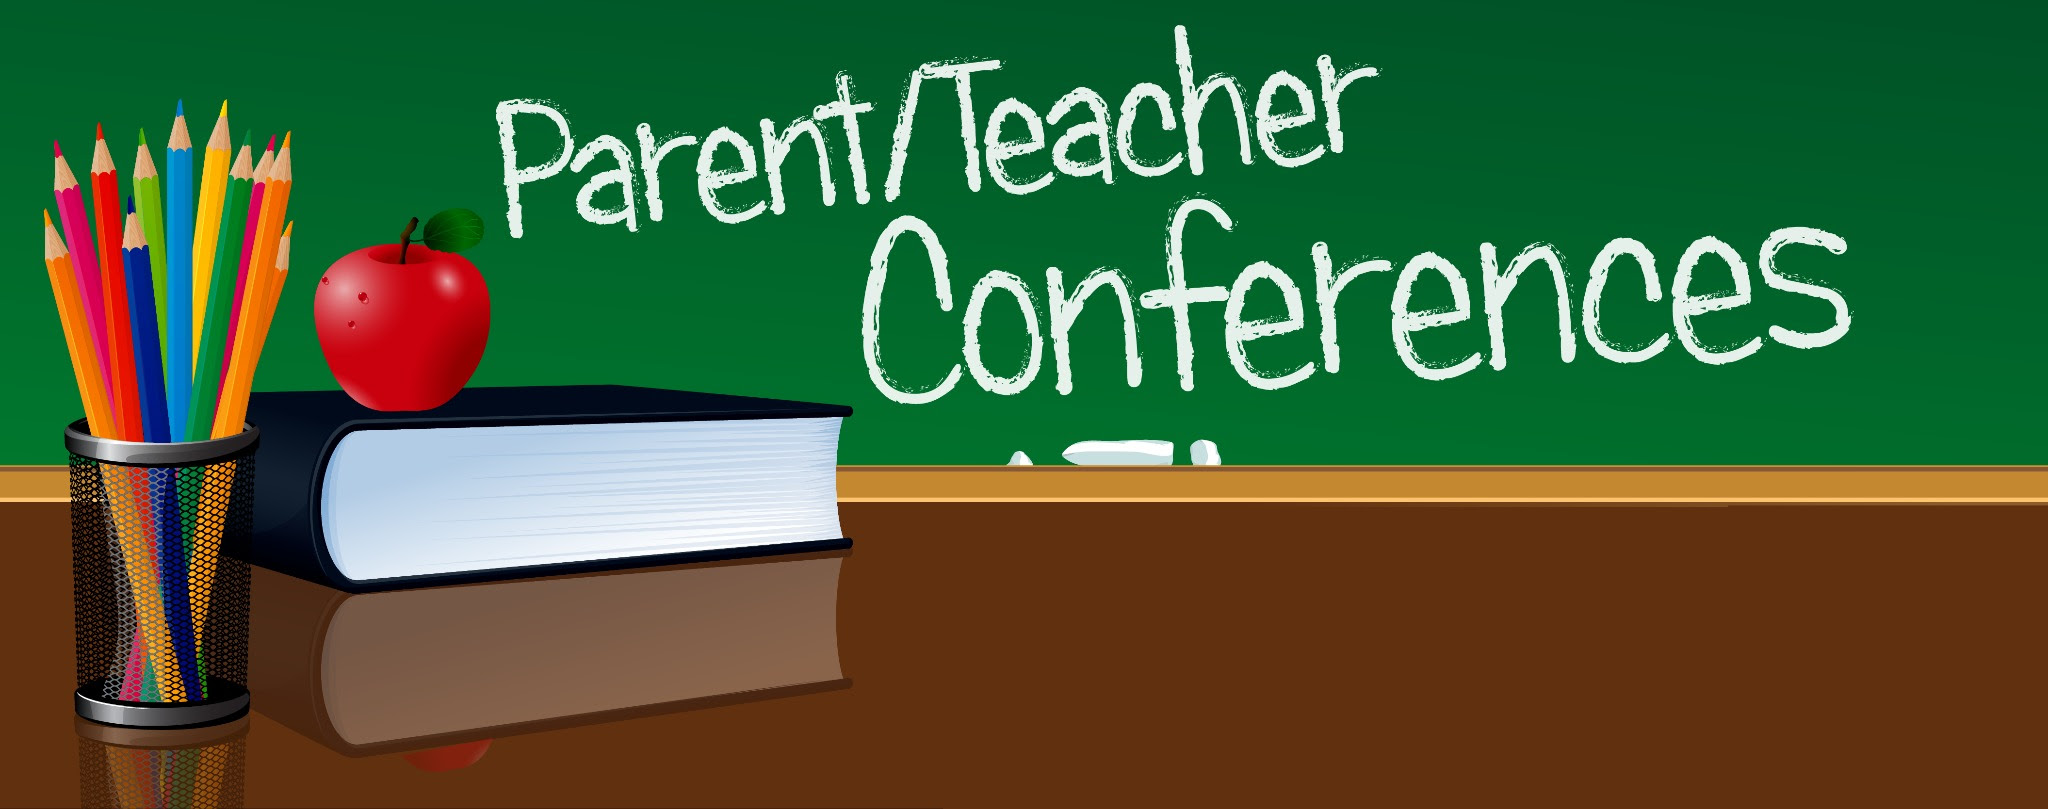 Teacher conferences. Parent teacher Conference. Parent - teacher 7) Conference.